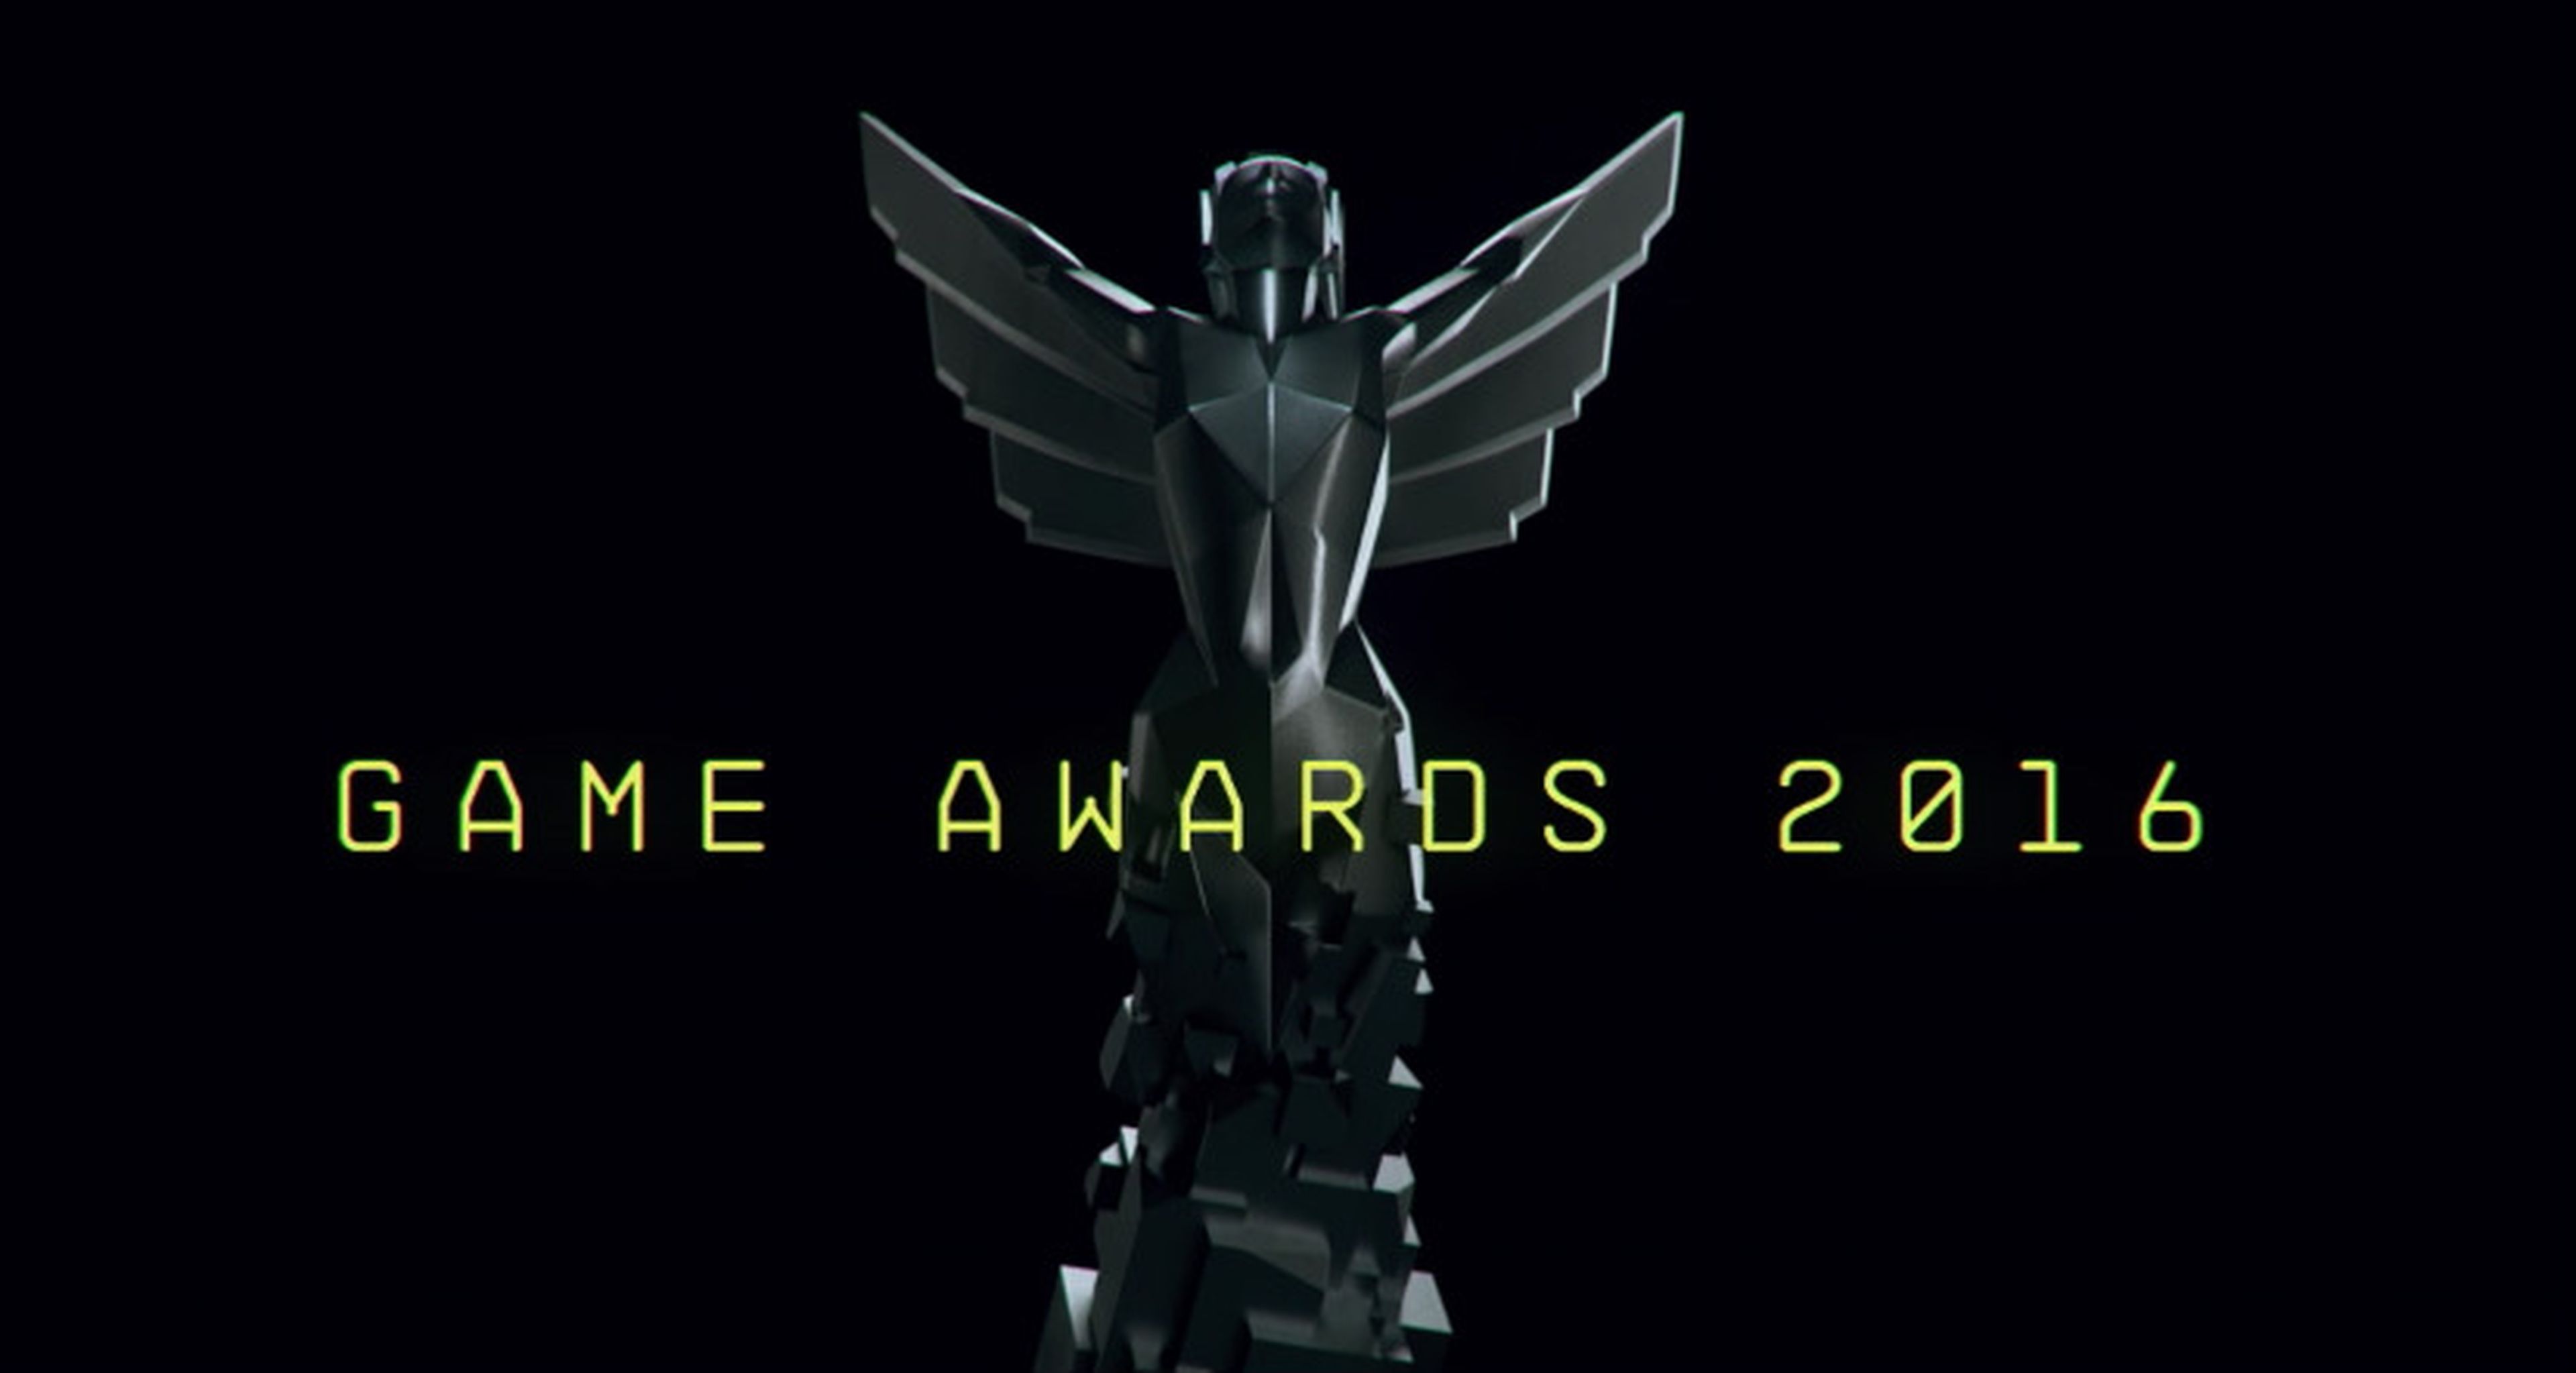 Game Awards 2016